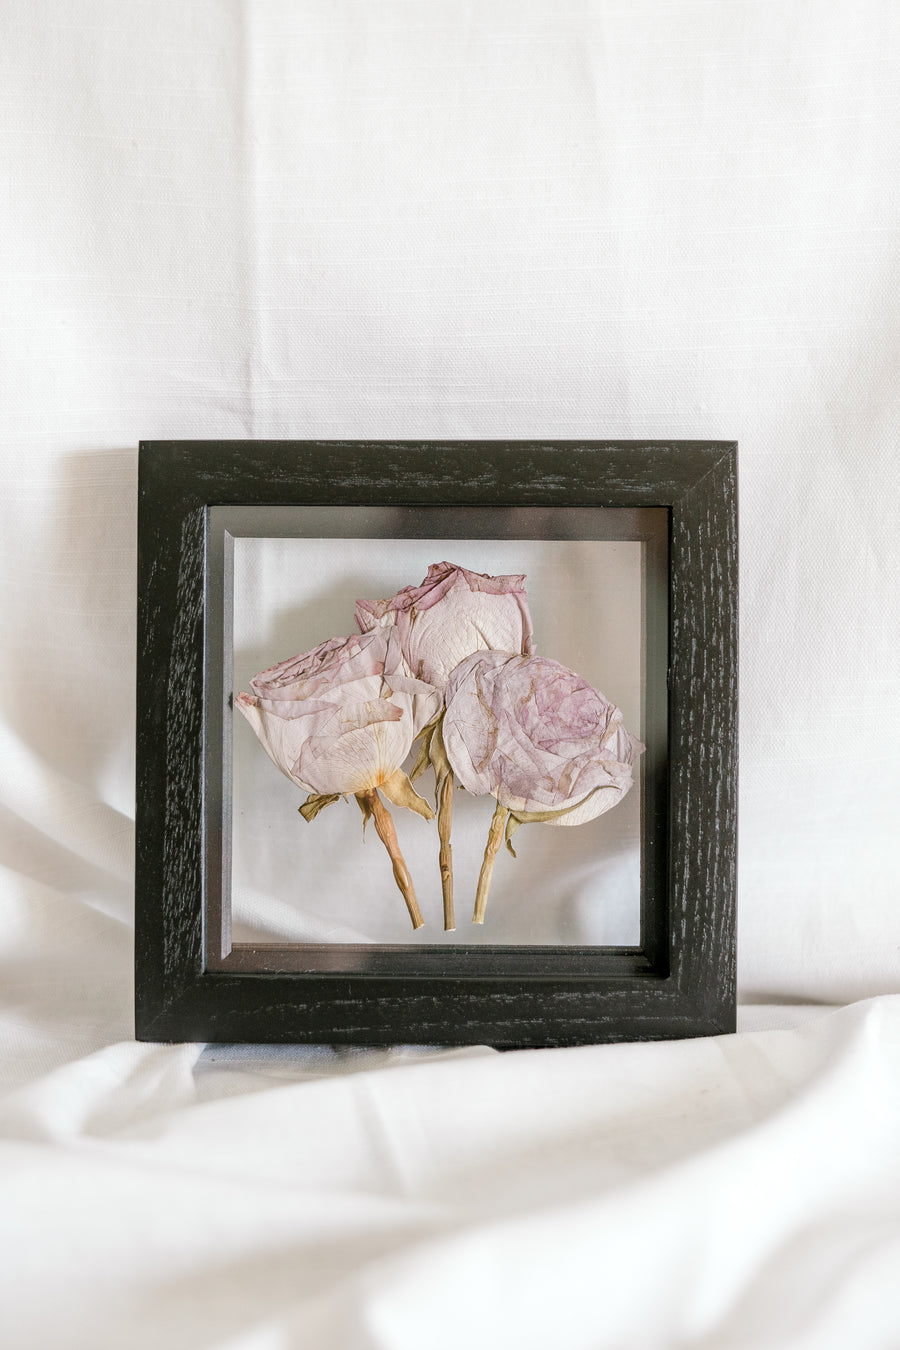 6x6 June birth flower frame - Rose